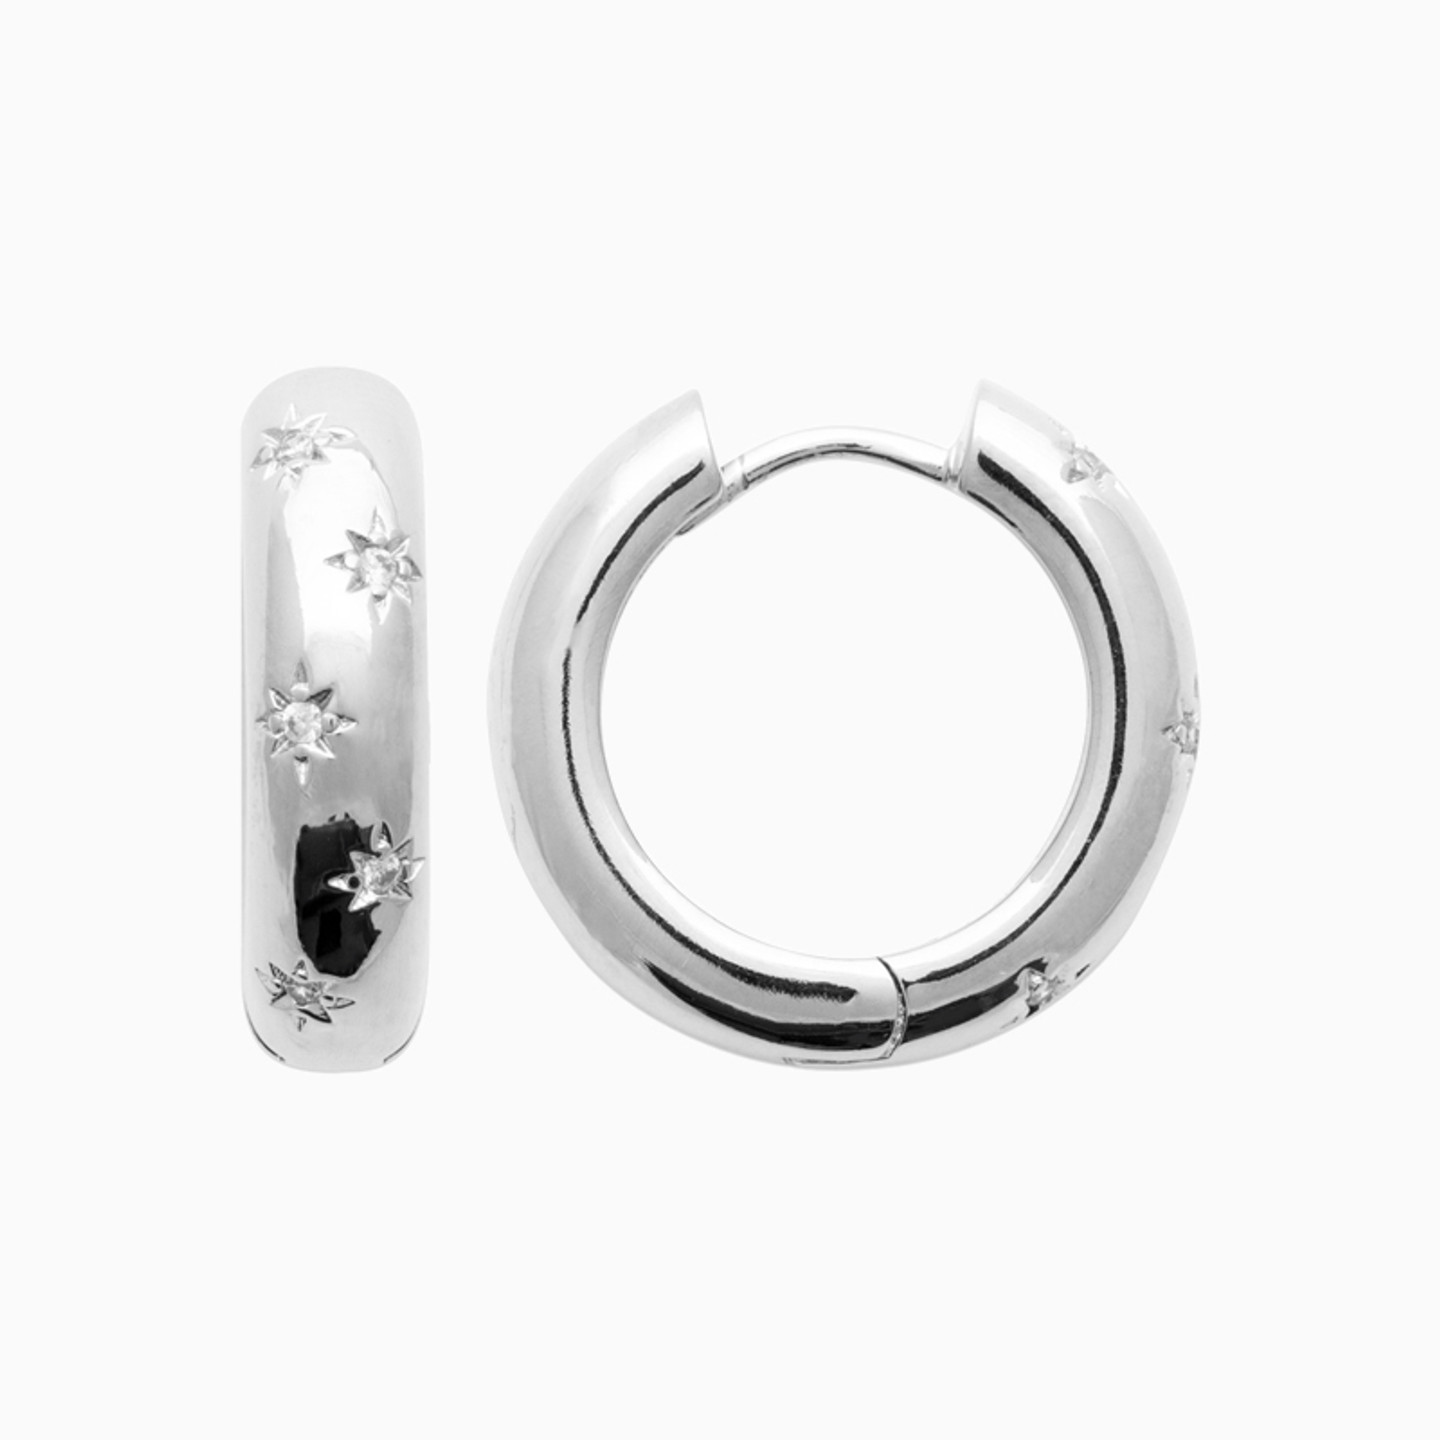 Sterling Silver Colored Stones Hoop Earrings - 3